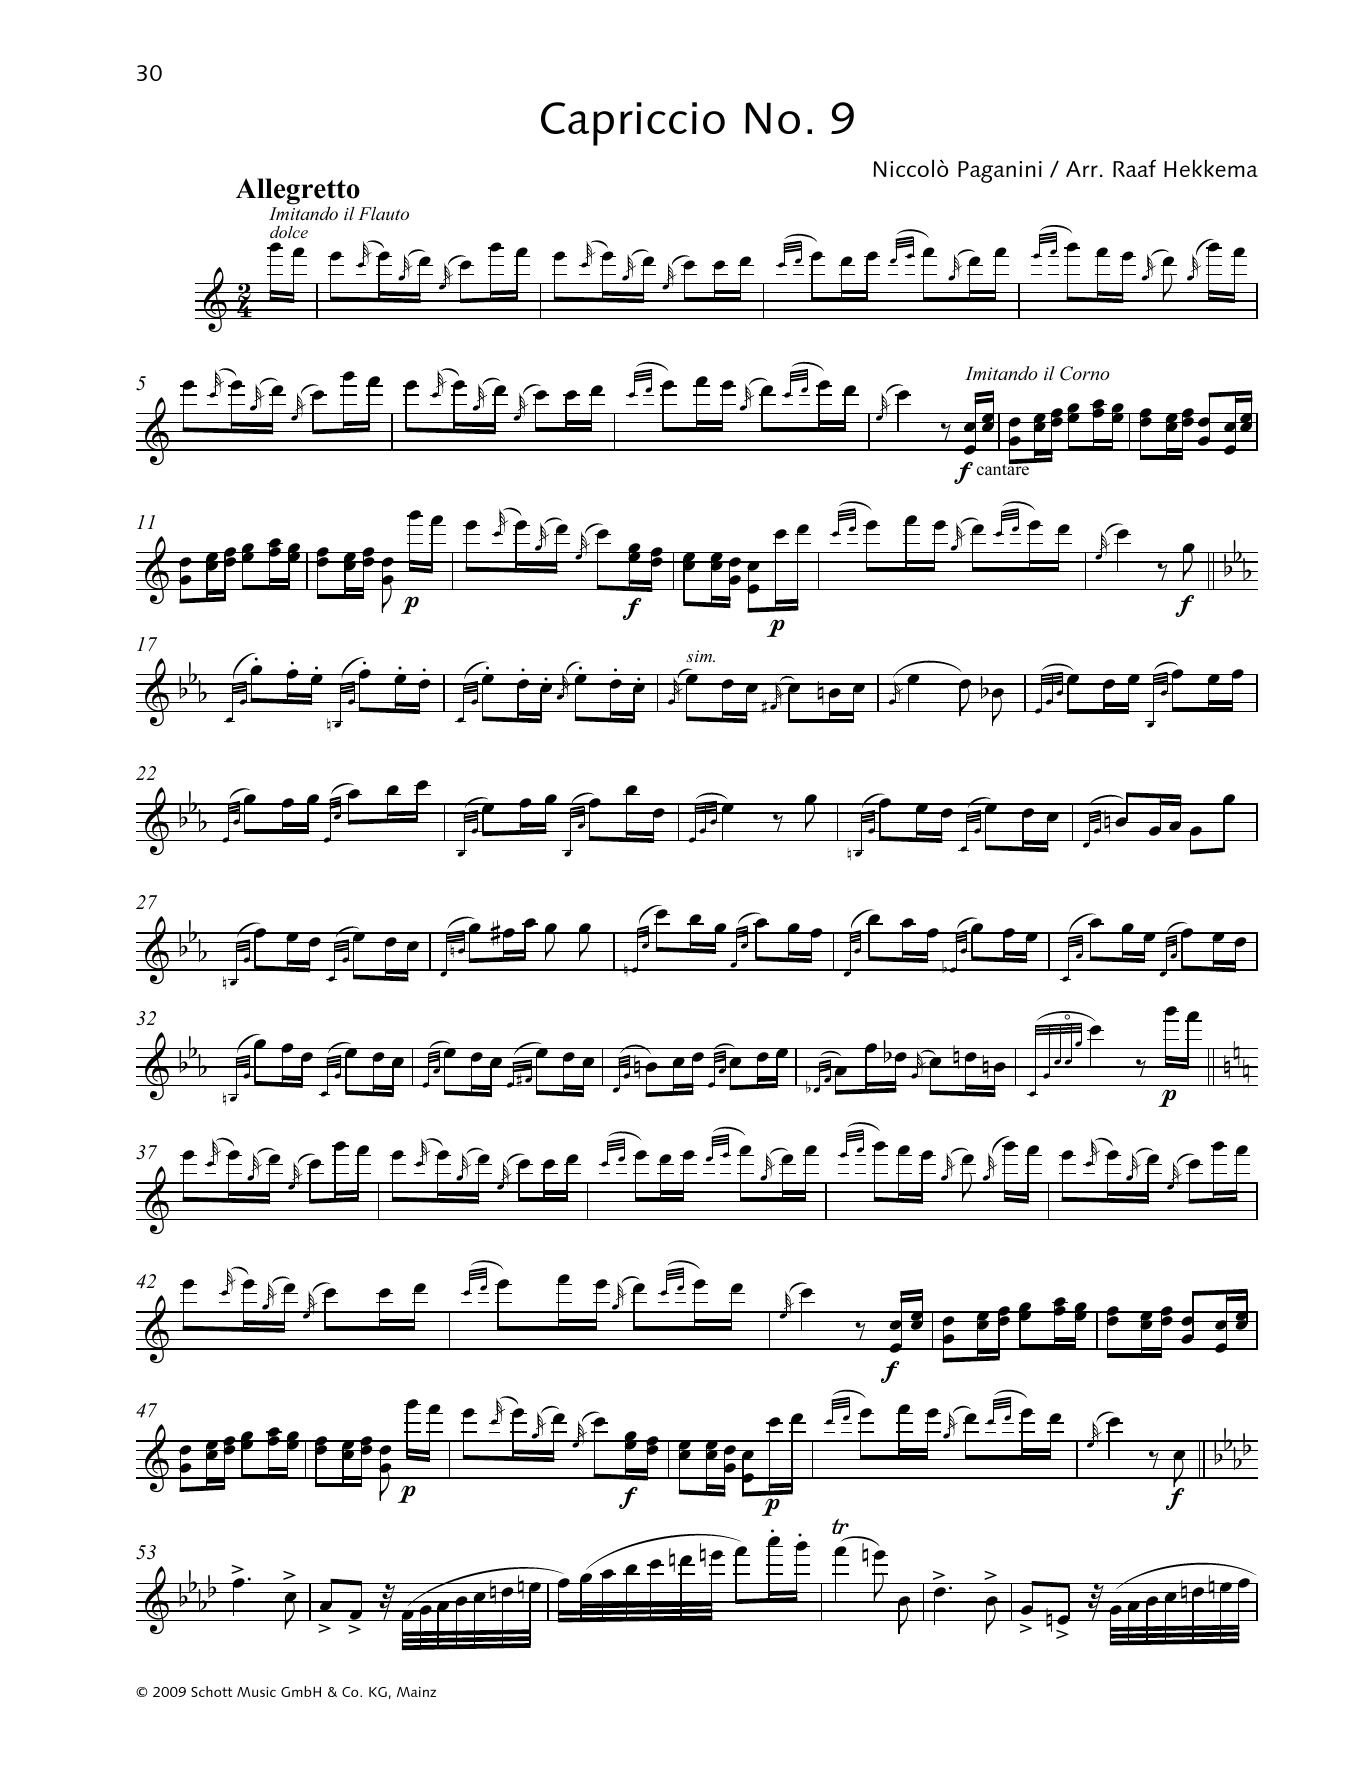 Download Niccolo Paganini Capriccio No. 9 Sheet Music